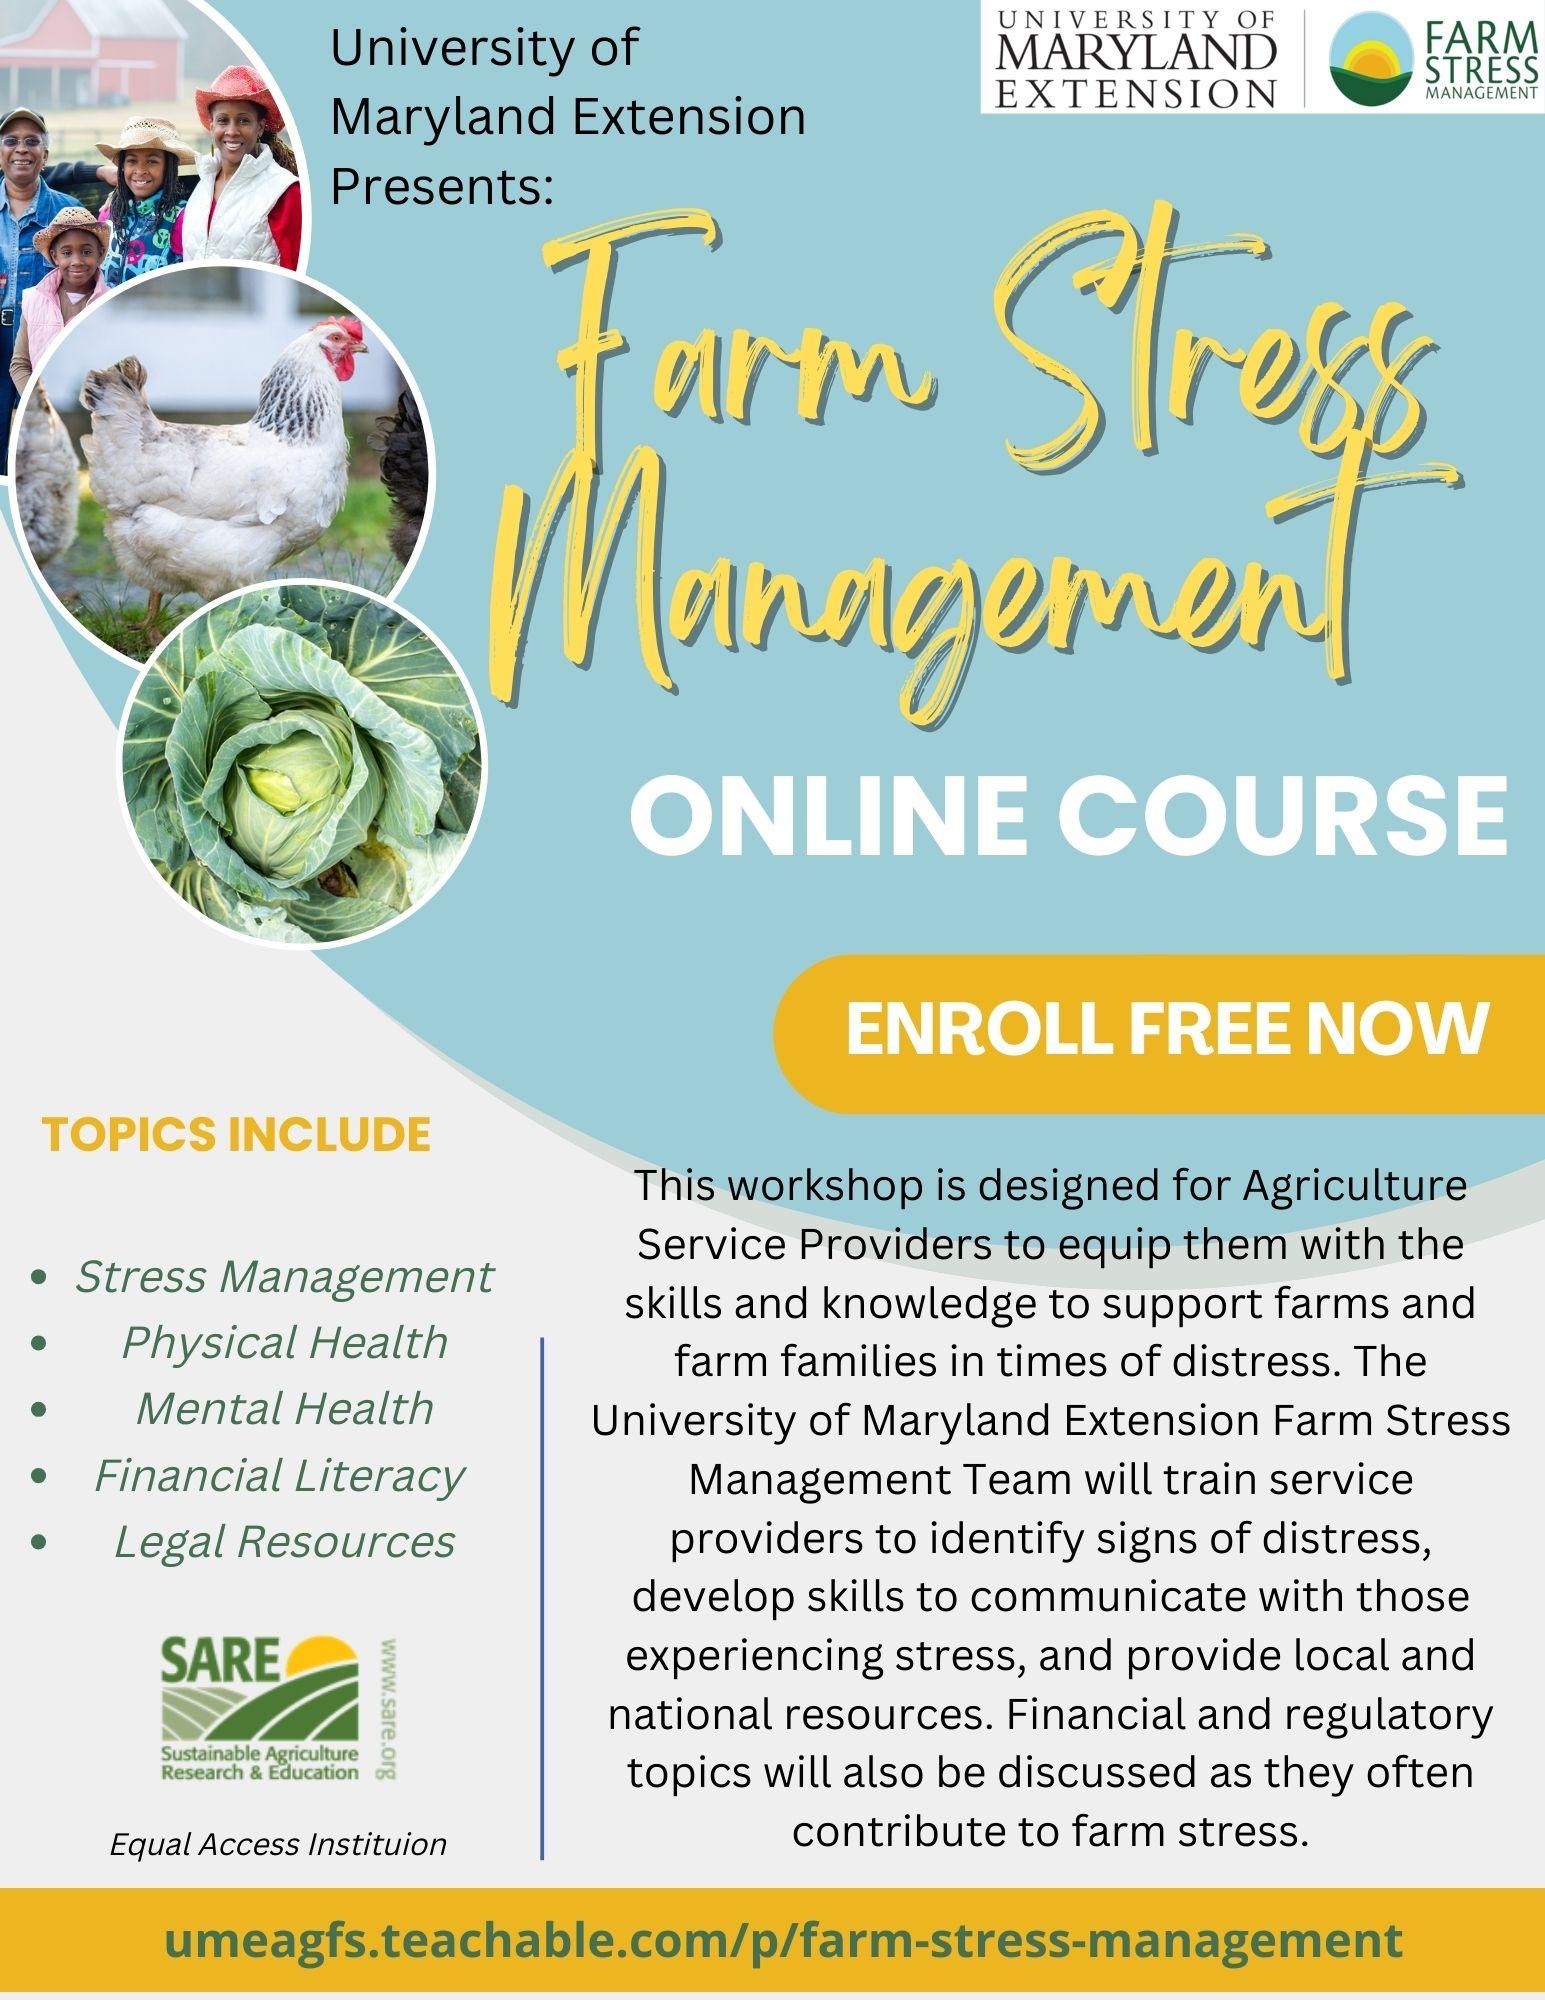 Farm stress management online course flyer